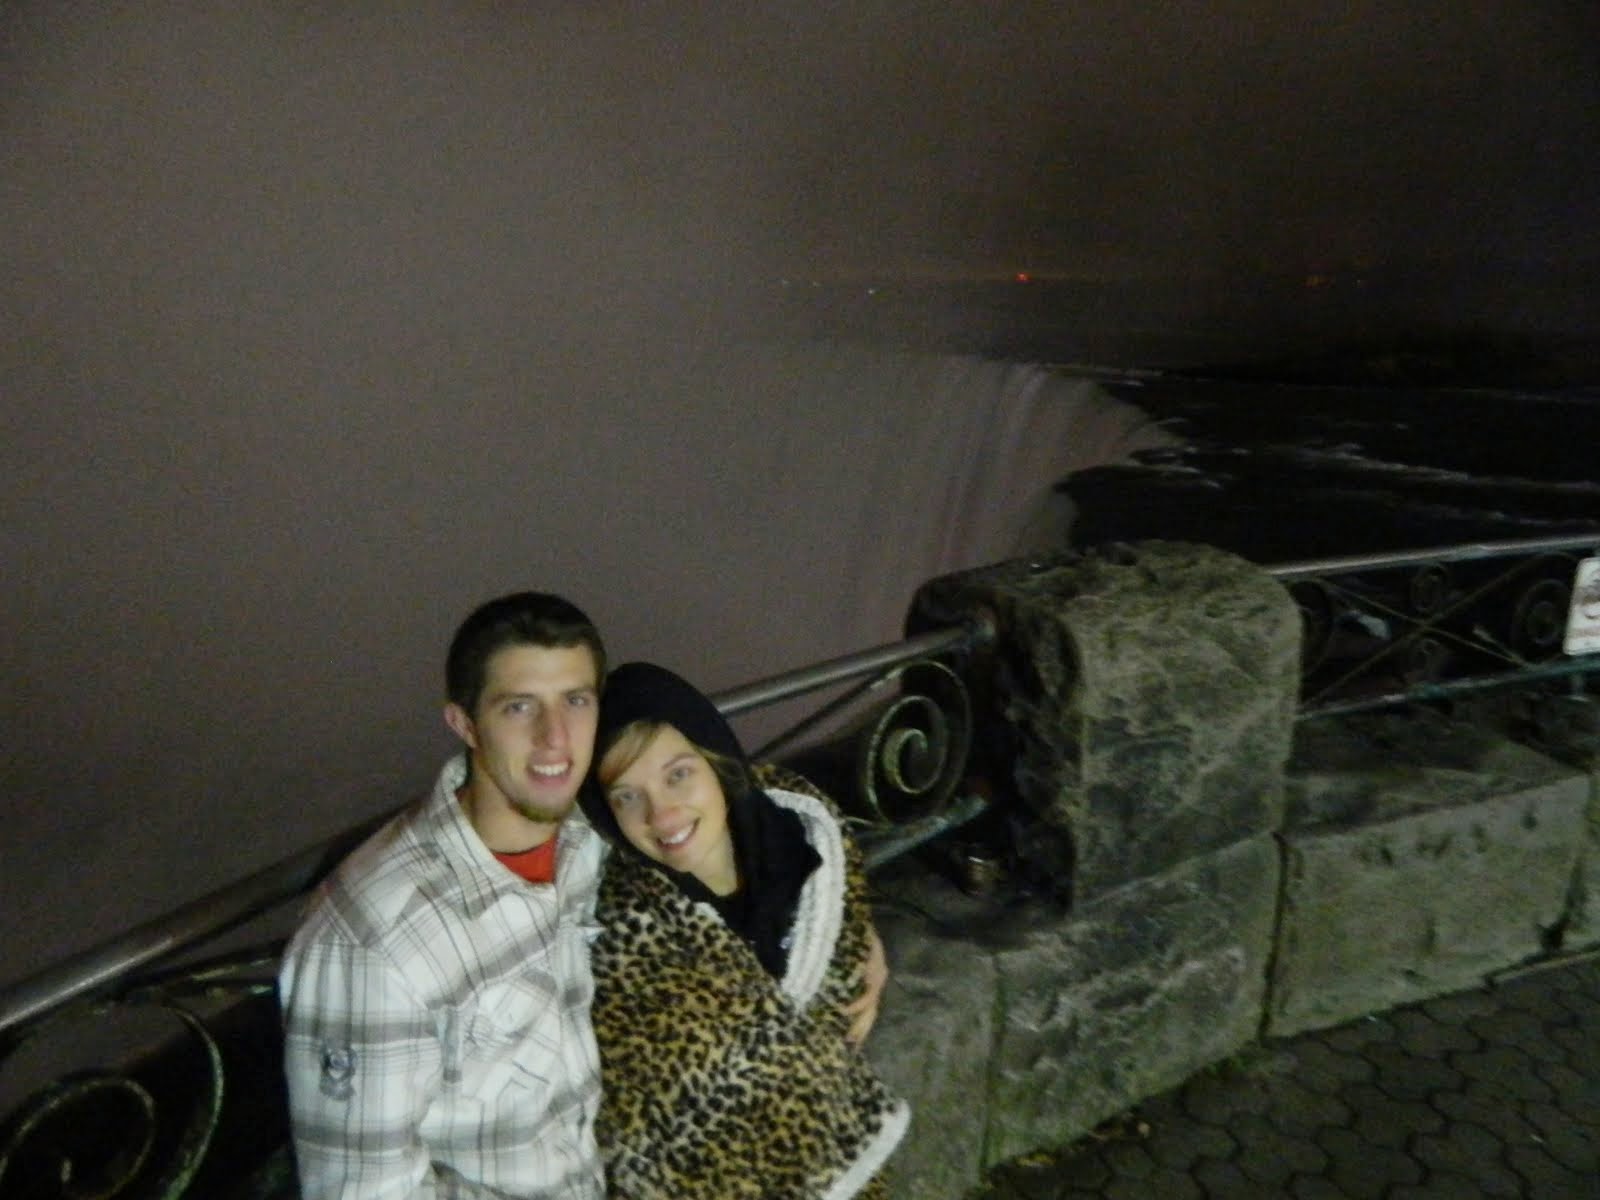 Niagara Falls with my Sweetheart.